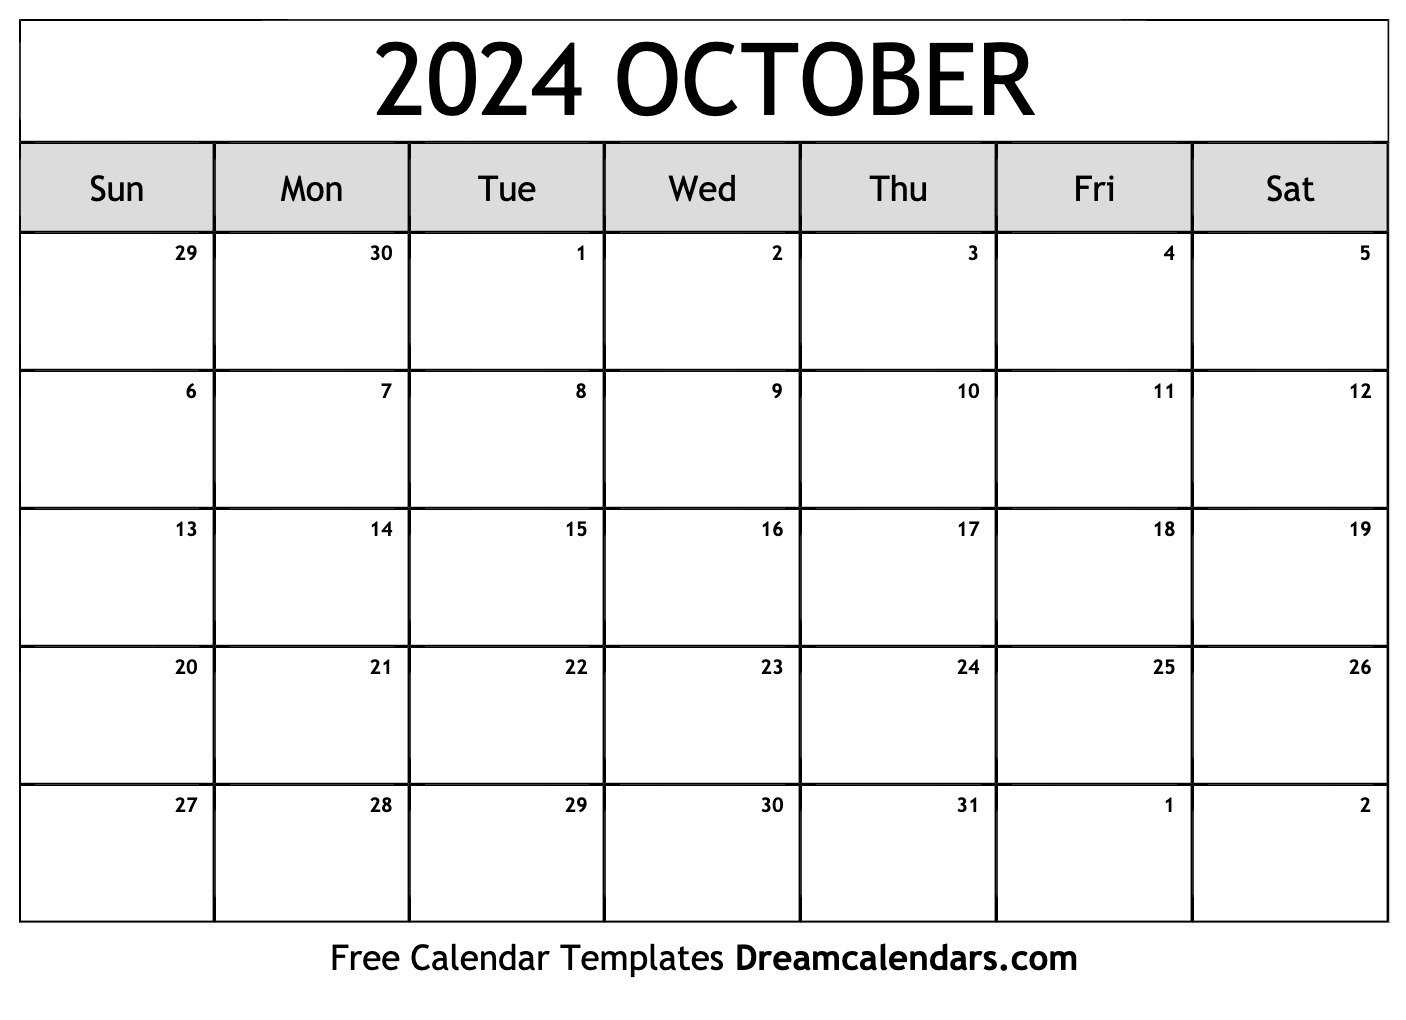 Calendar 2024 October Printable Barbe Carlita - Free Printable 2024 October Calendar With Holidays